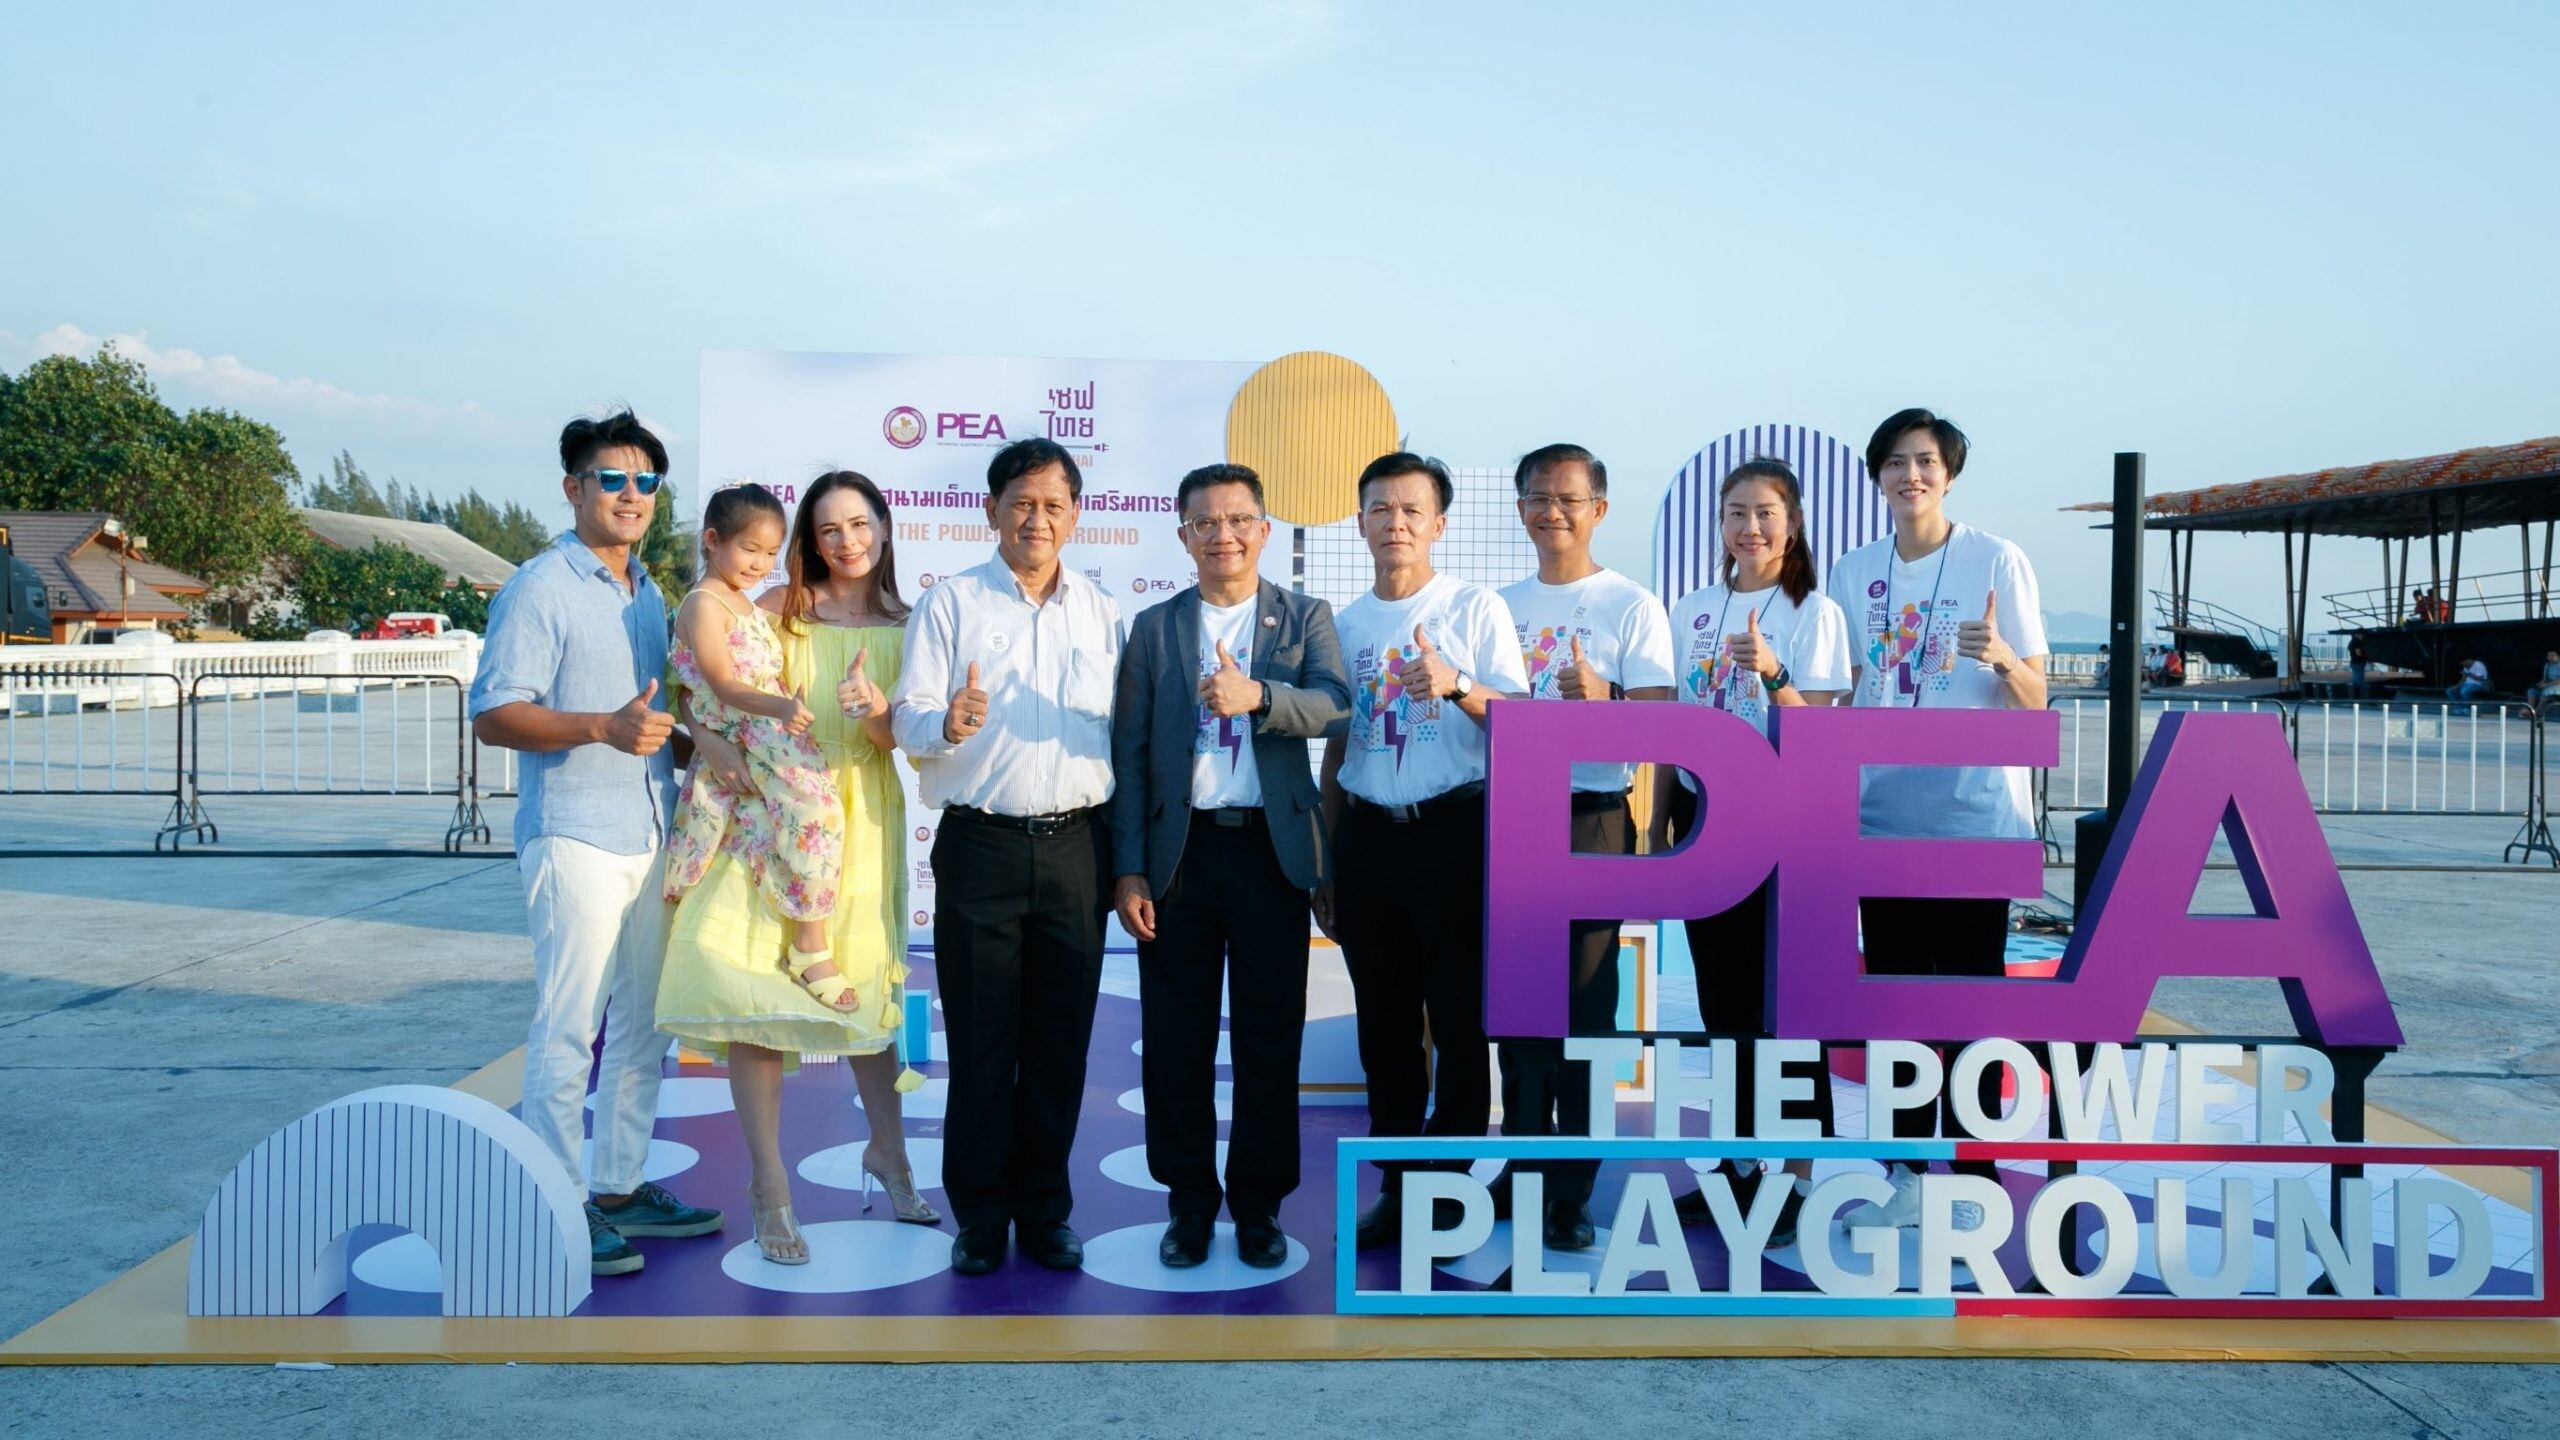 ภูริ-แอน ครอบครัวหิรัญพฤกษ์ ร่วมเผยเคล็ดลับส่งเสริมการเรียนรู้ให้กับลูก ในงาน PEA  มอบสนามเด็กเล่น "PEA THE POWER PLAYGROUND" ของโครงการ "เซฟไทย"